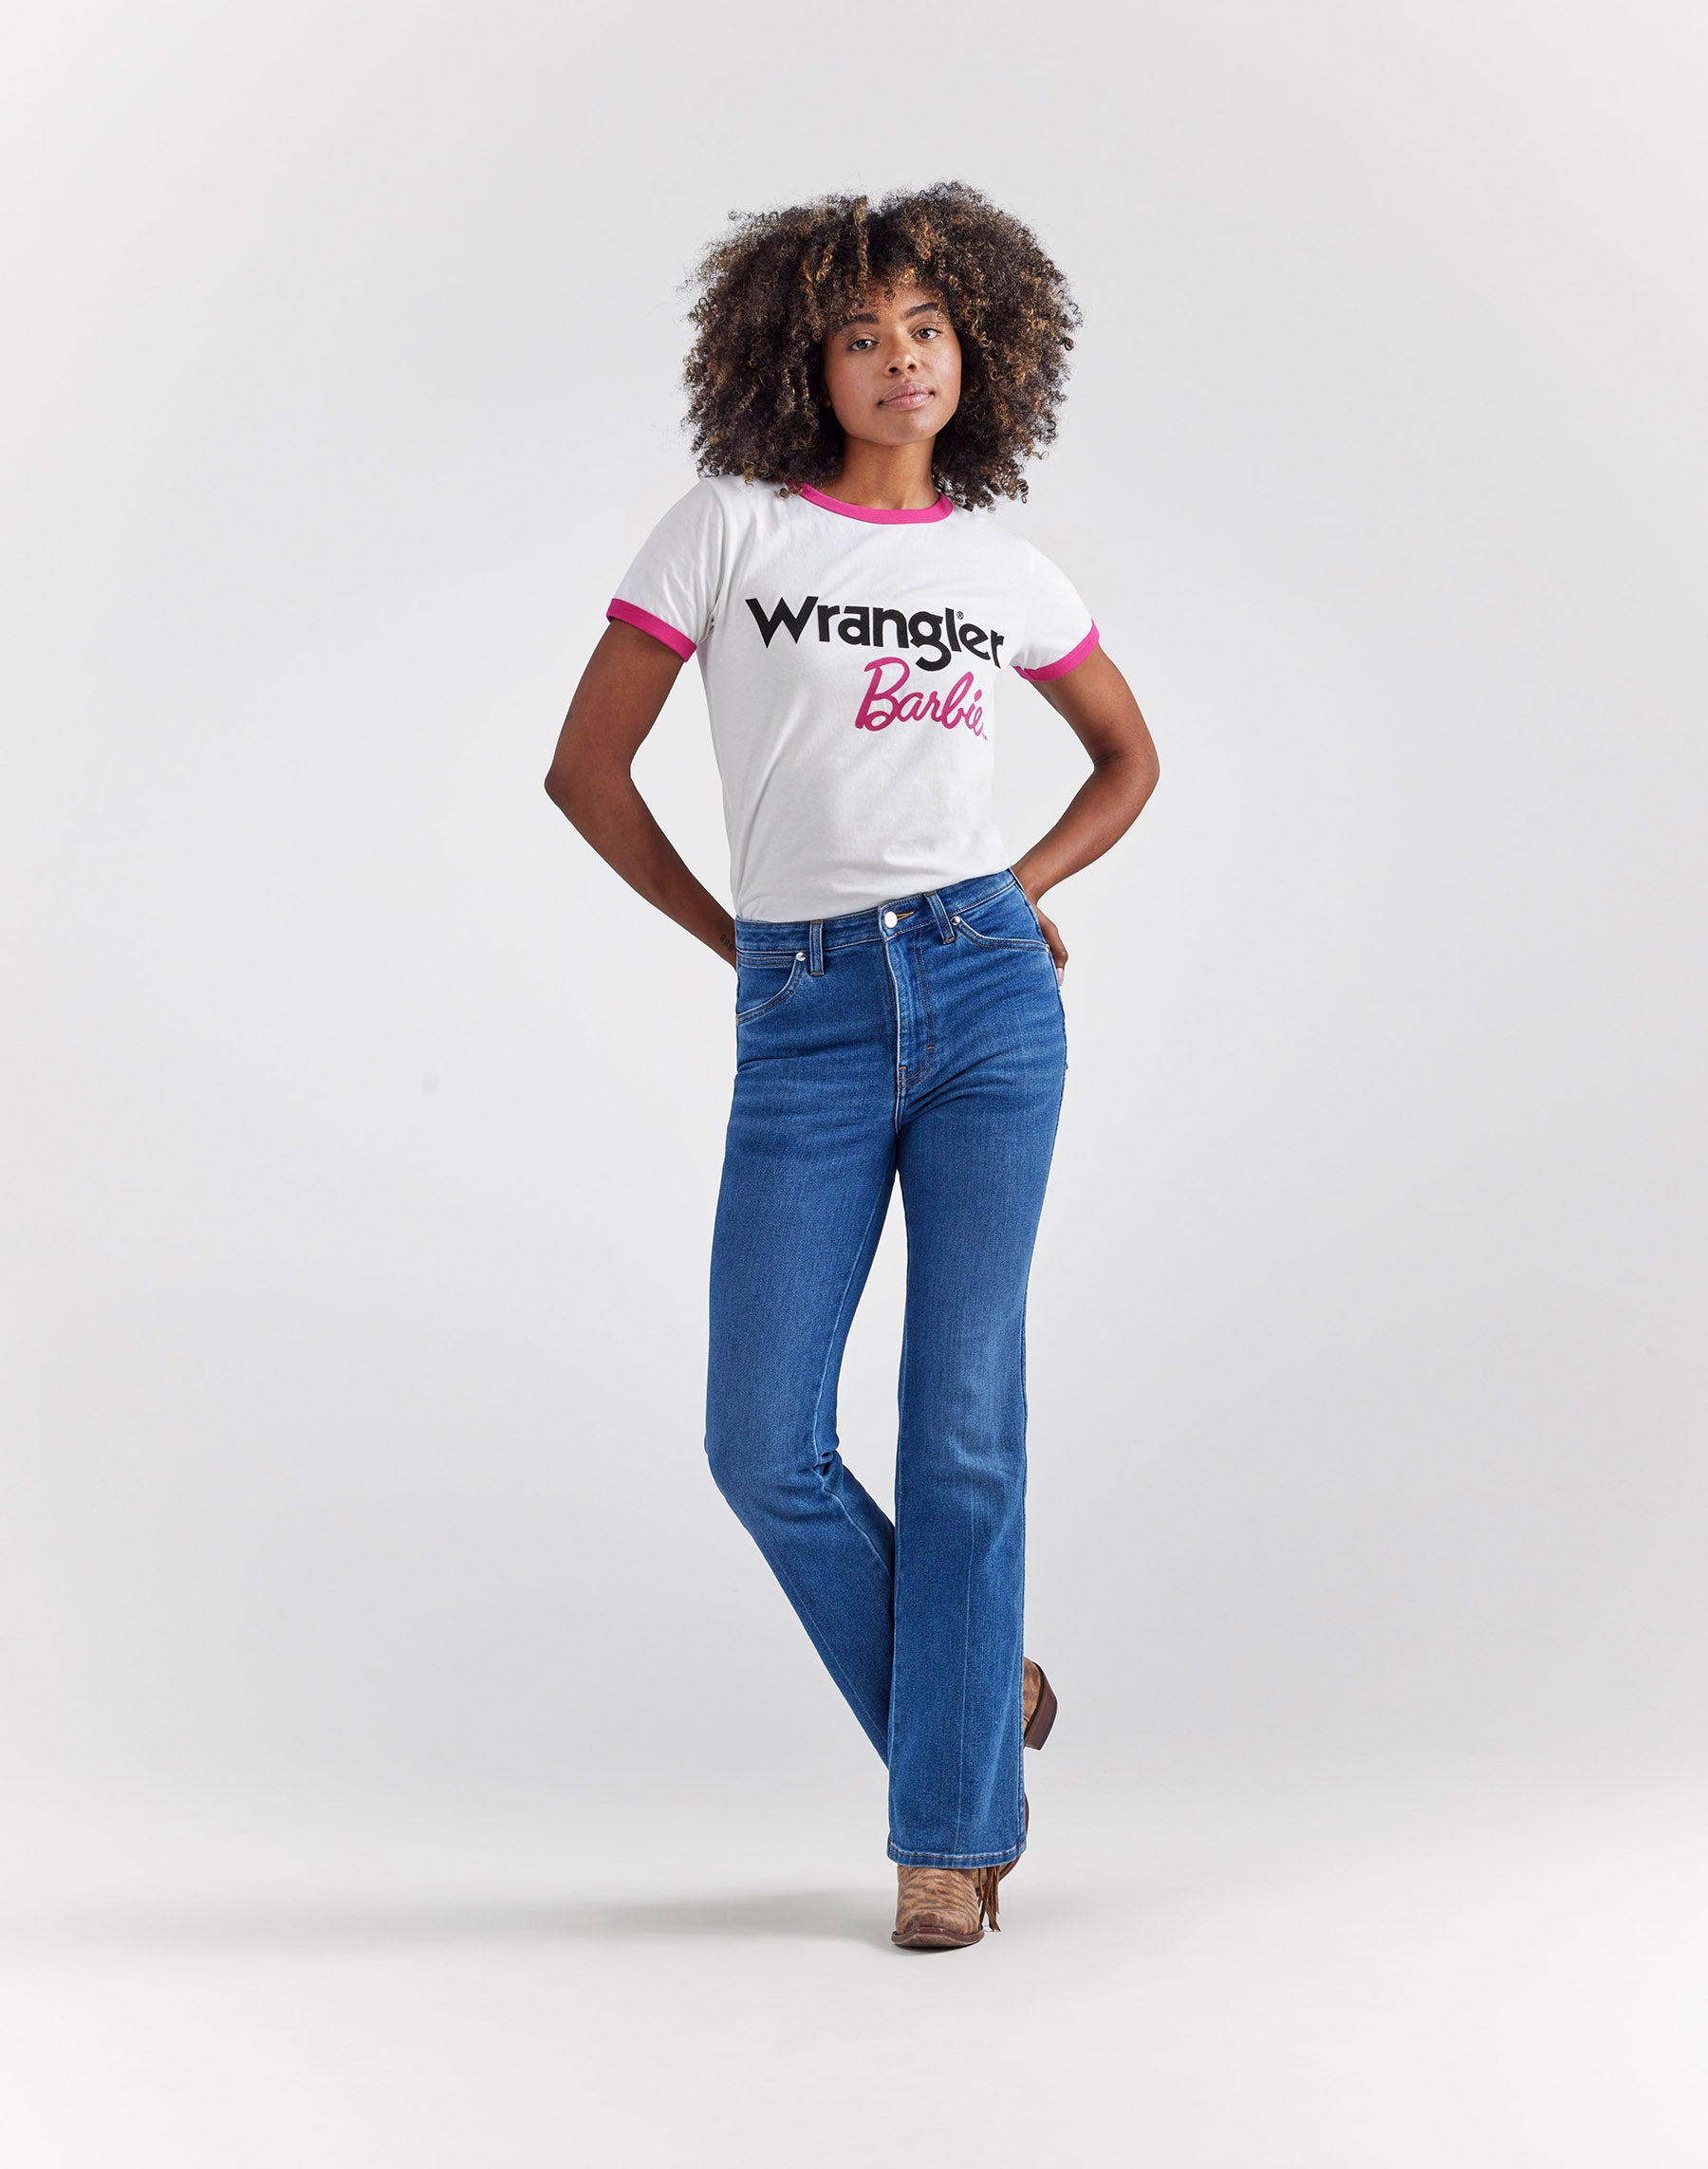 Wrangler X Barbie™ - Ringer Tee in Worn White T-Shirts Wrangler   